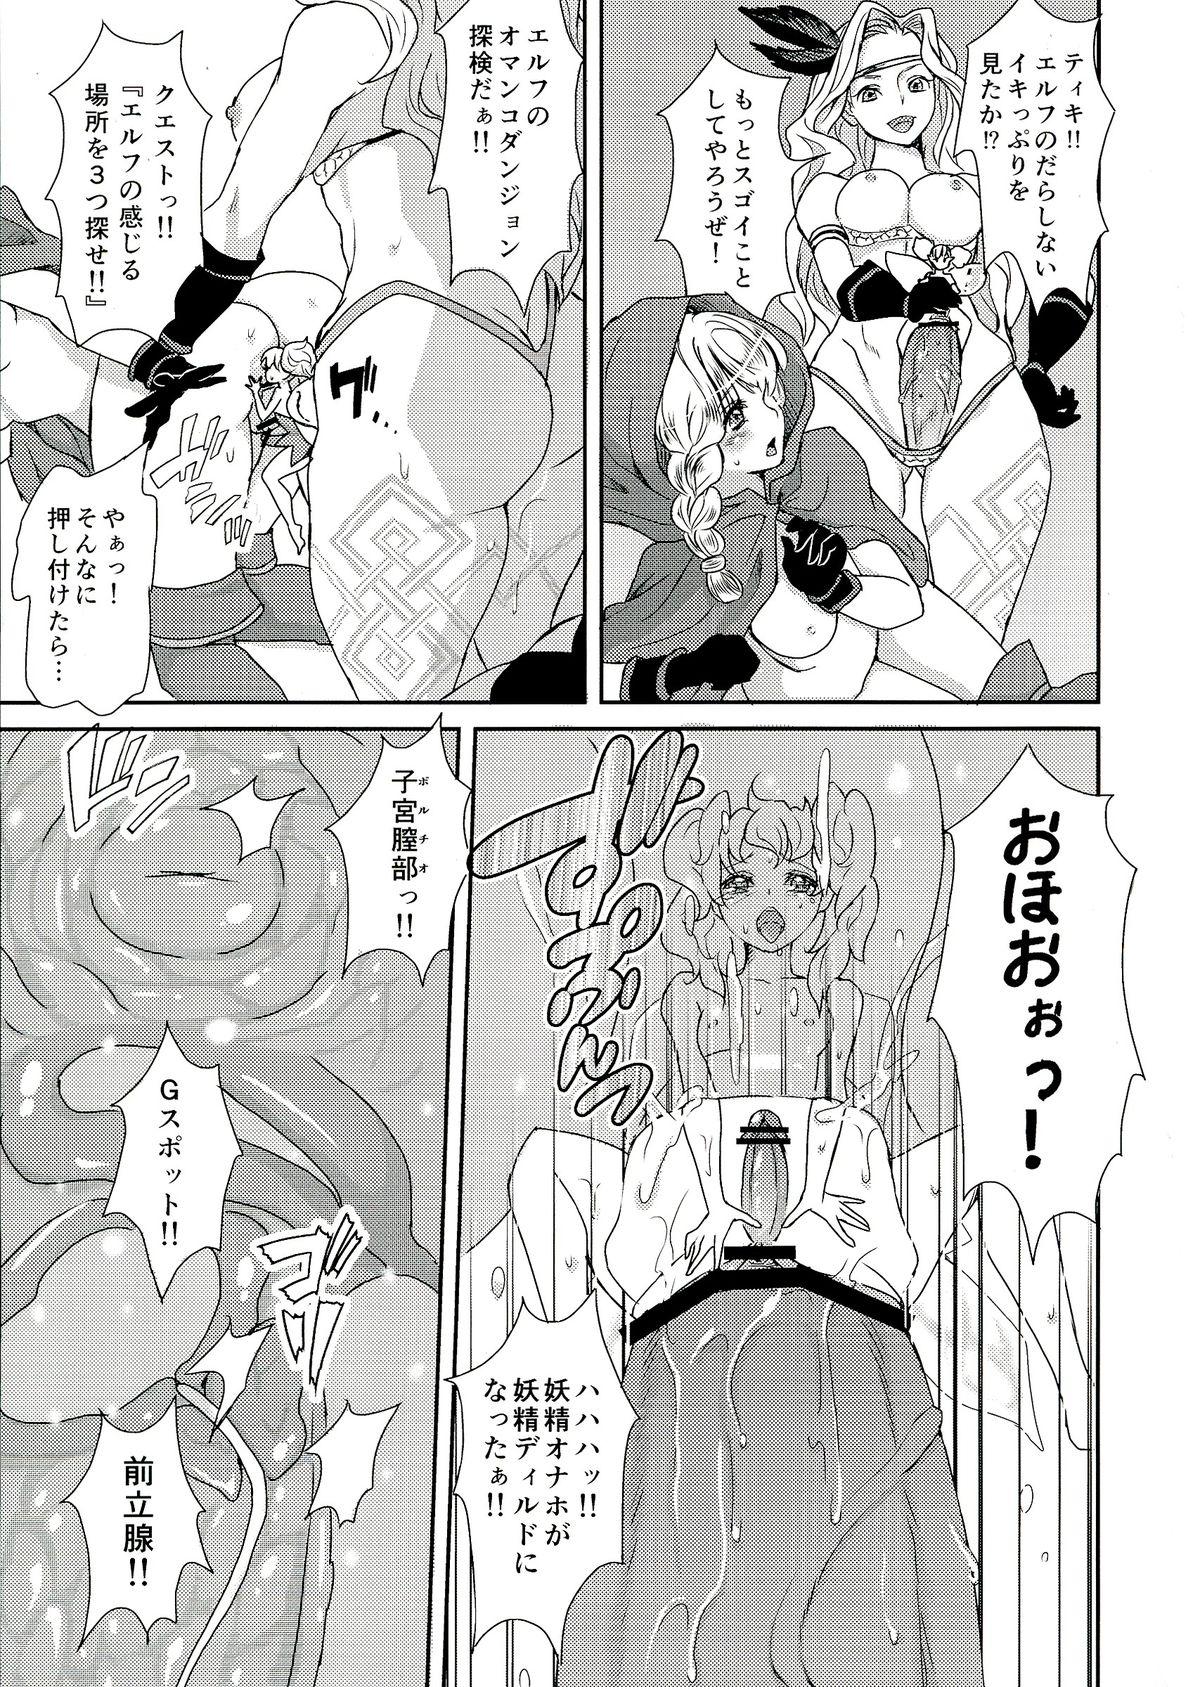 For Kokan ni Kinoko! - Dragons crown Face Sitting - Page 11